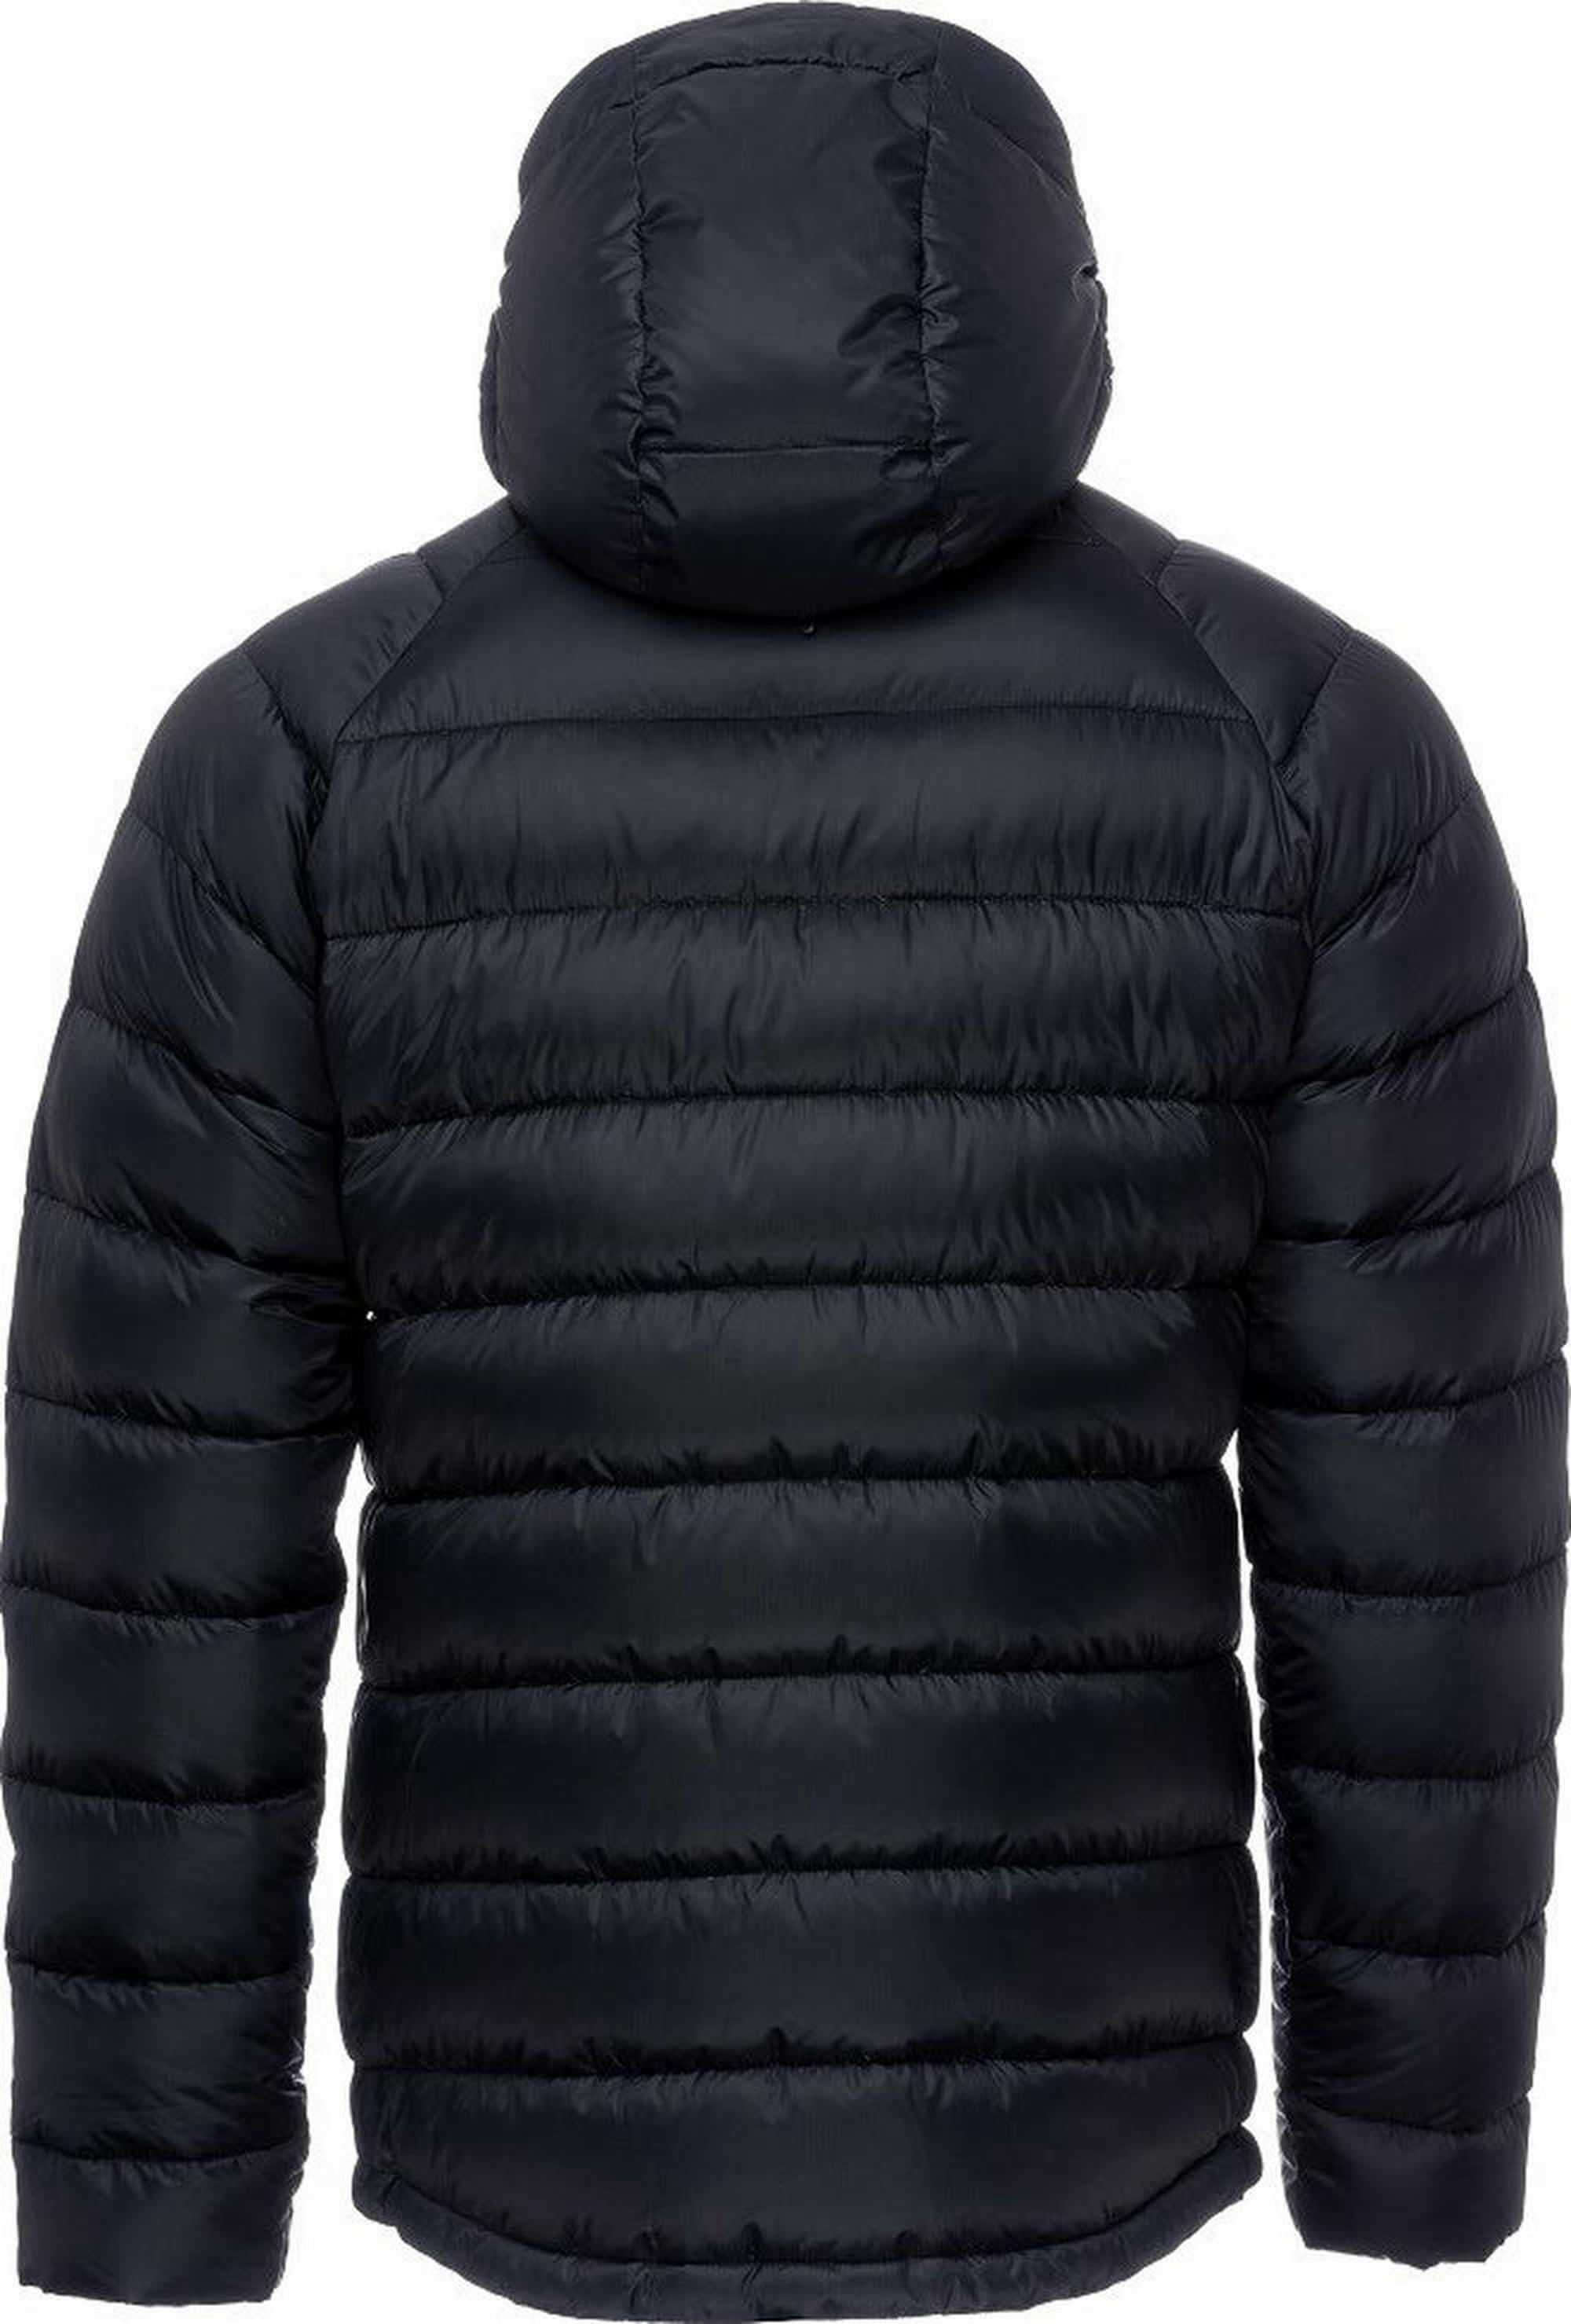 Куртка мужская Turbat Lofoten 2 Mns moonless night S черный фото 2